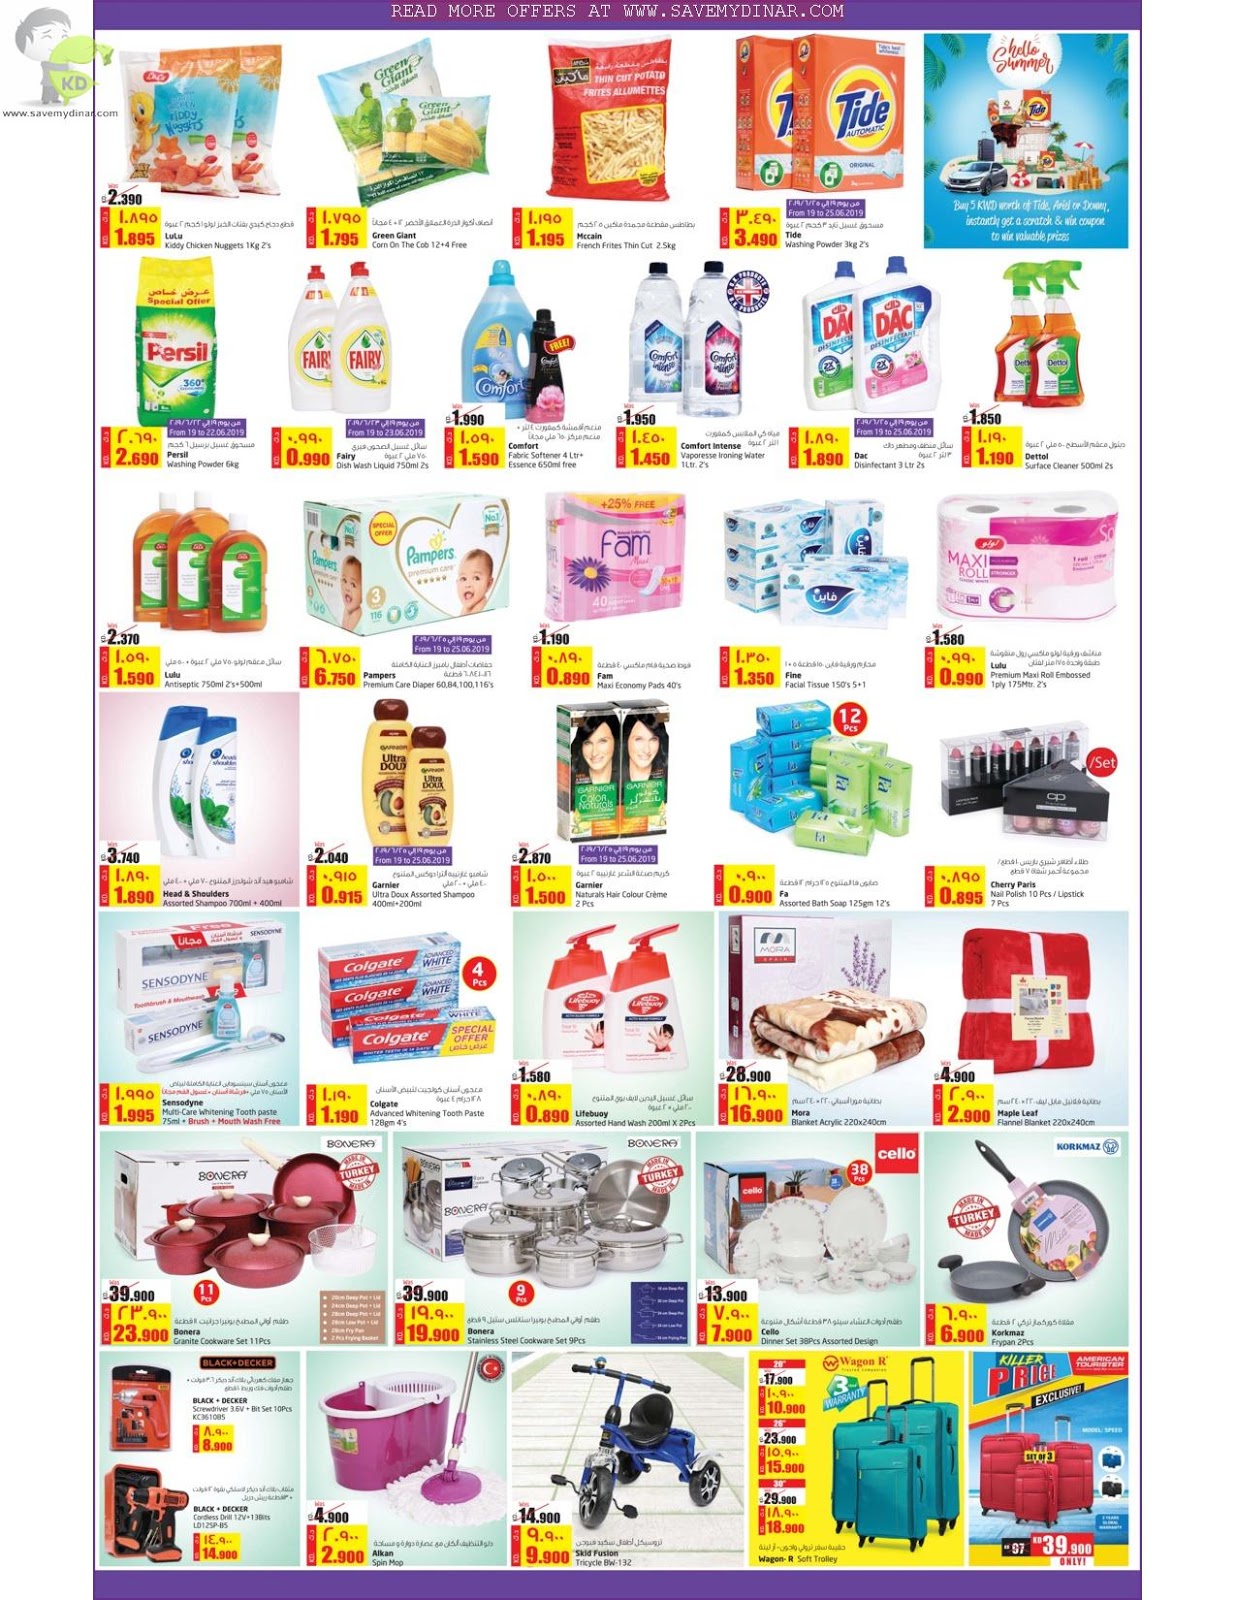 Lulu Hypermarket Kuwait - Big Savers | SaveMyDinar - Offers, Deals ...